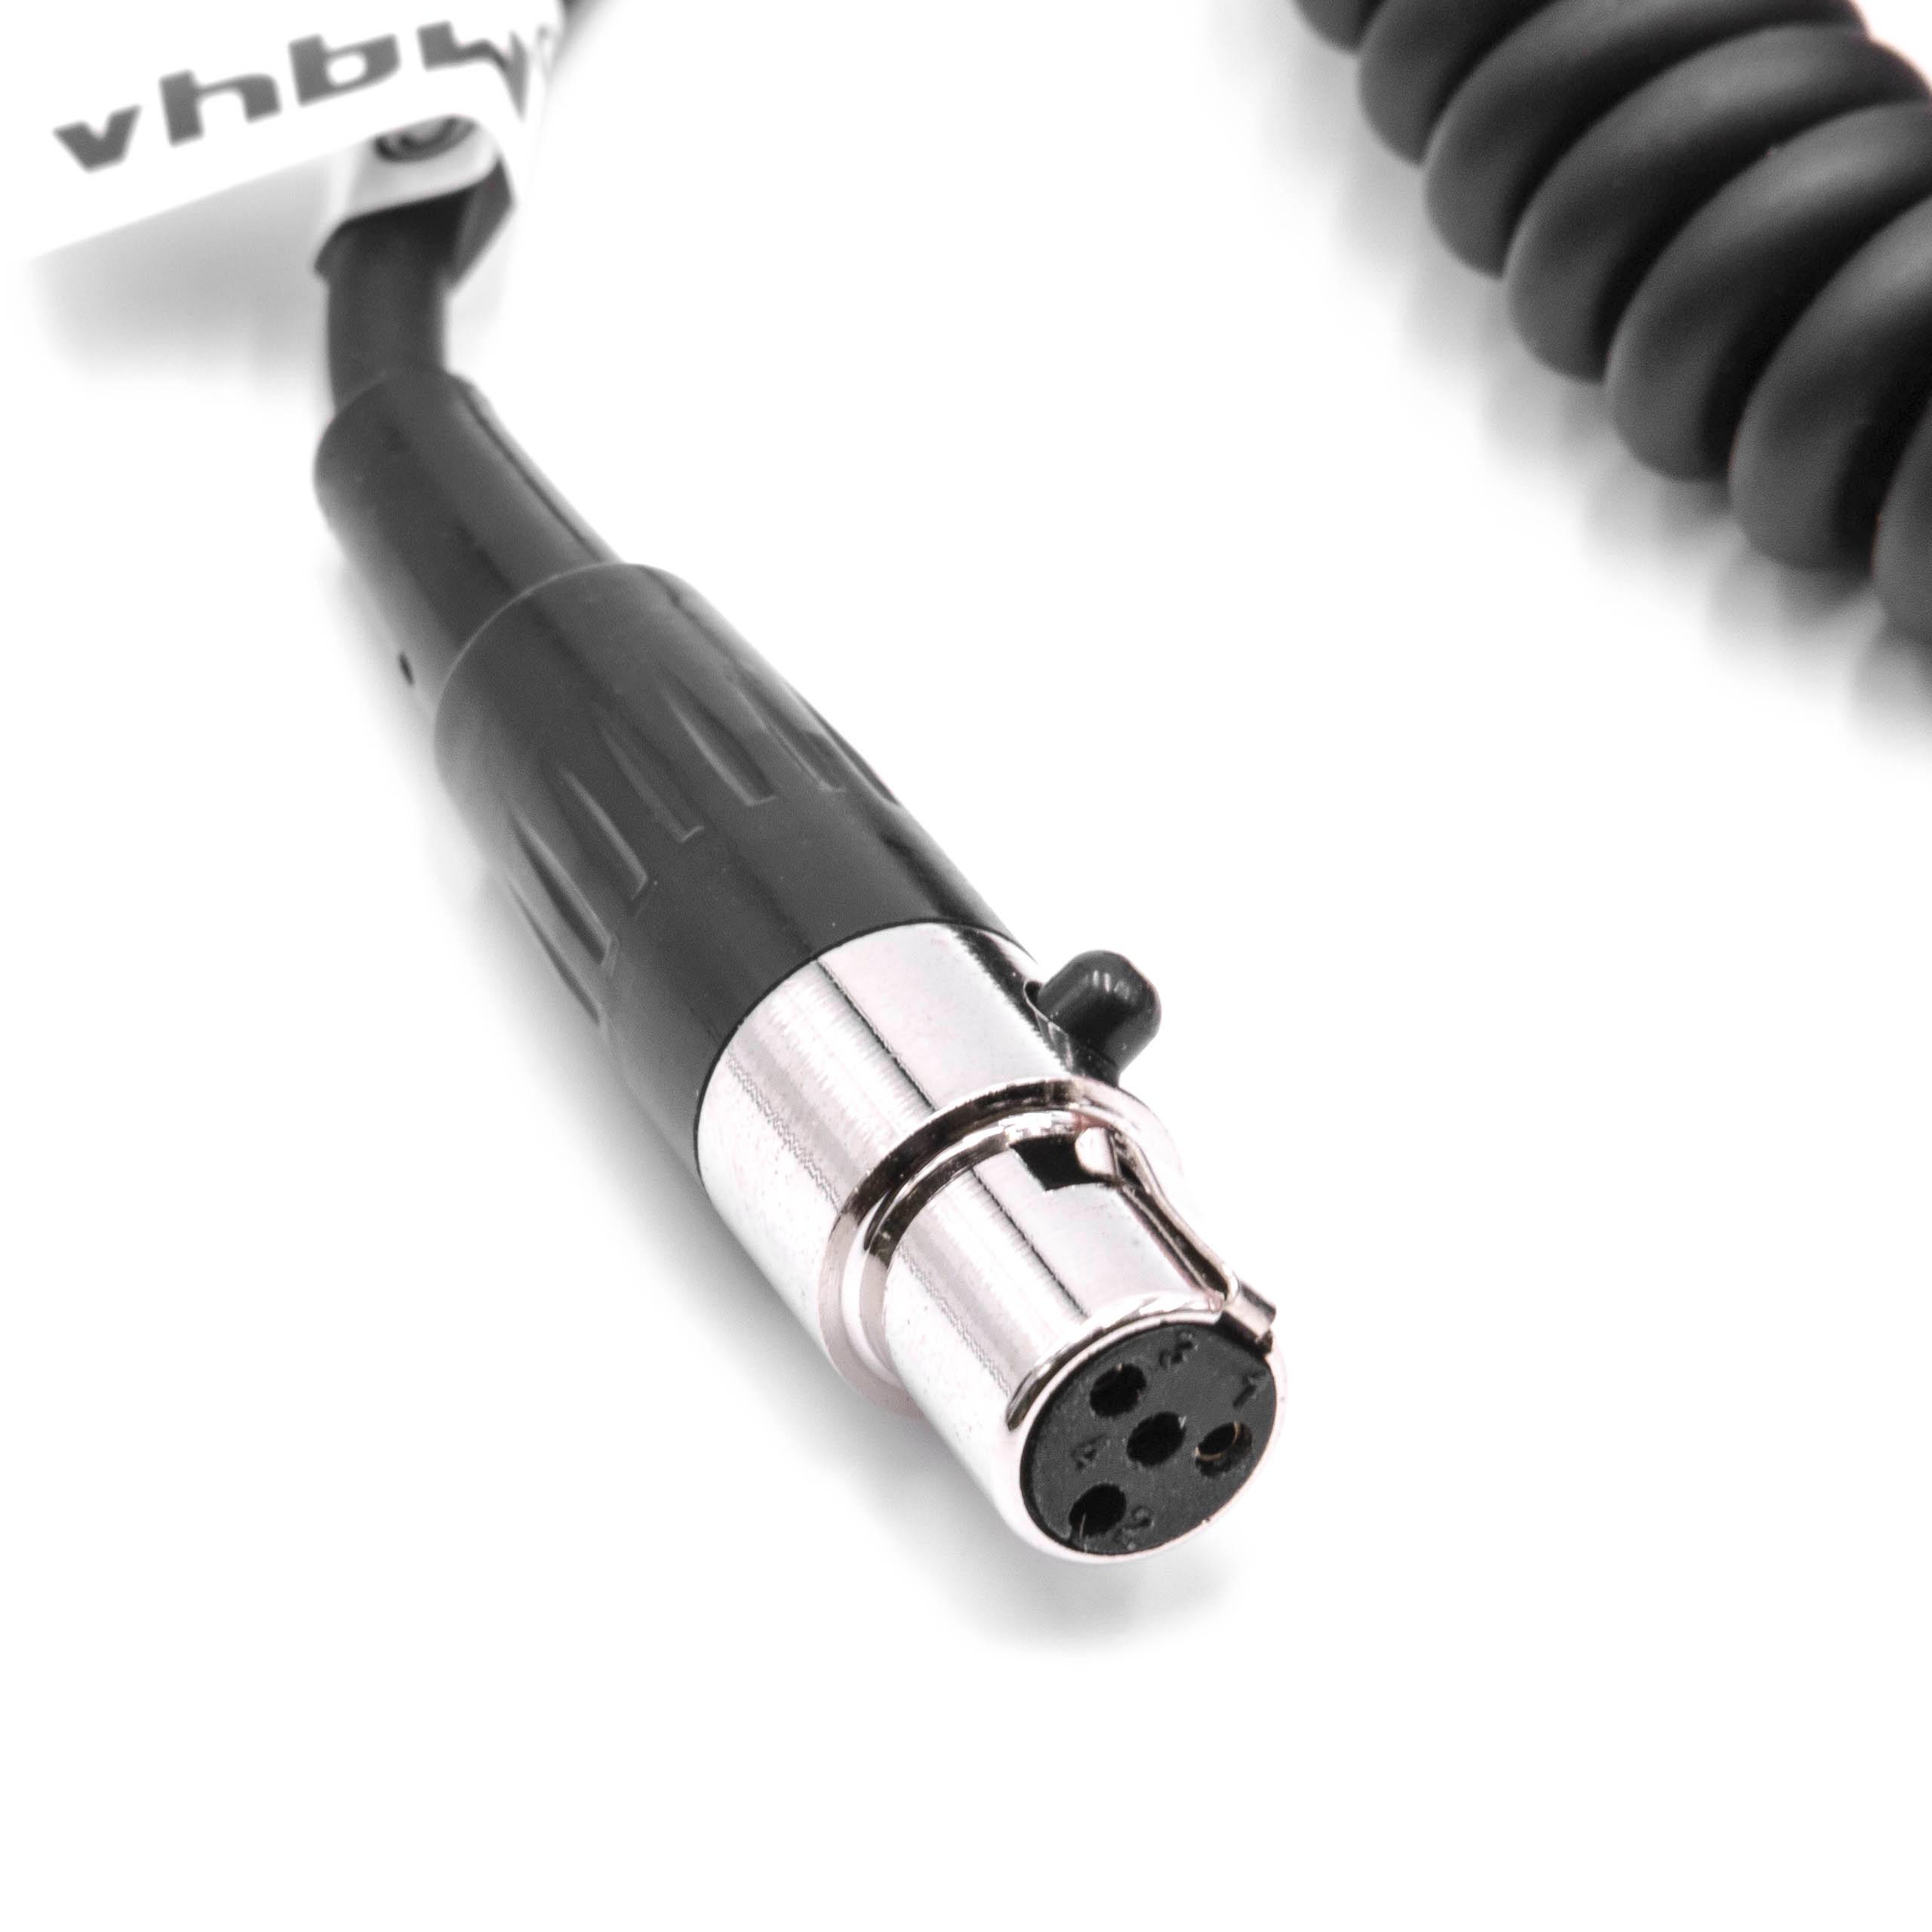  Câble d'alimentation D-Tap vers mini XLR mâle 4 broches compatible avec caméscope, caméra - Câble spiralé